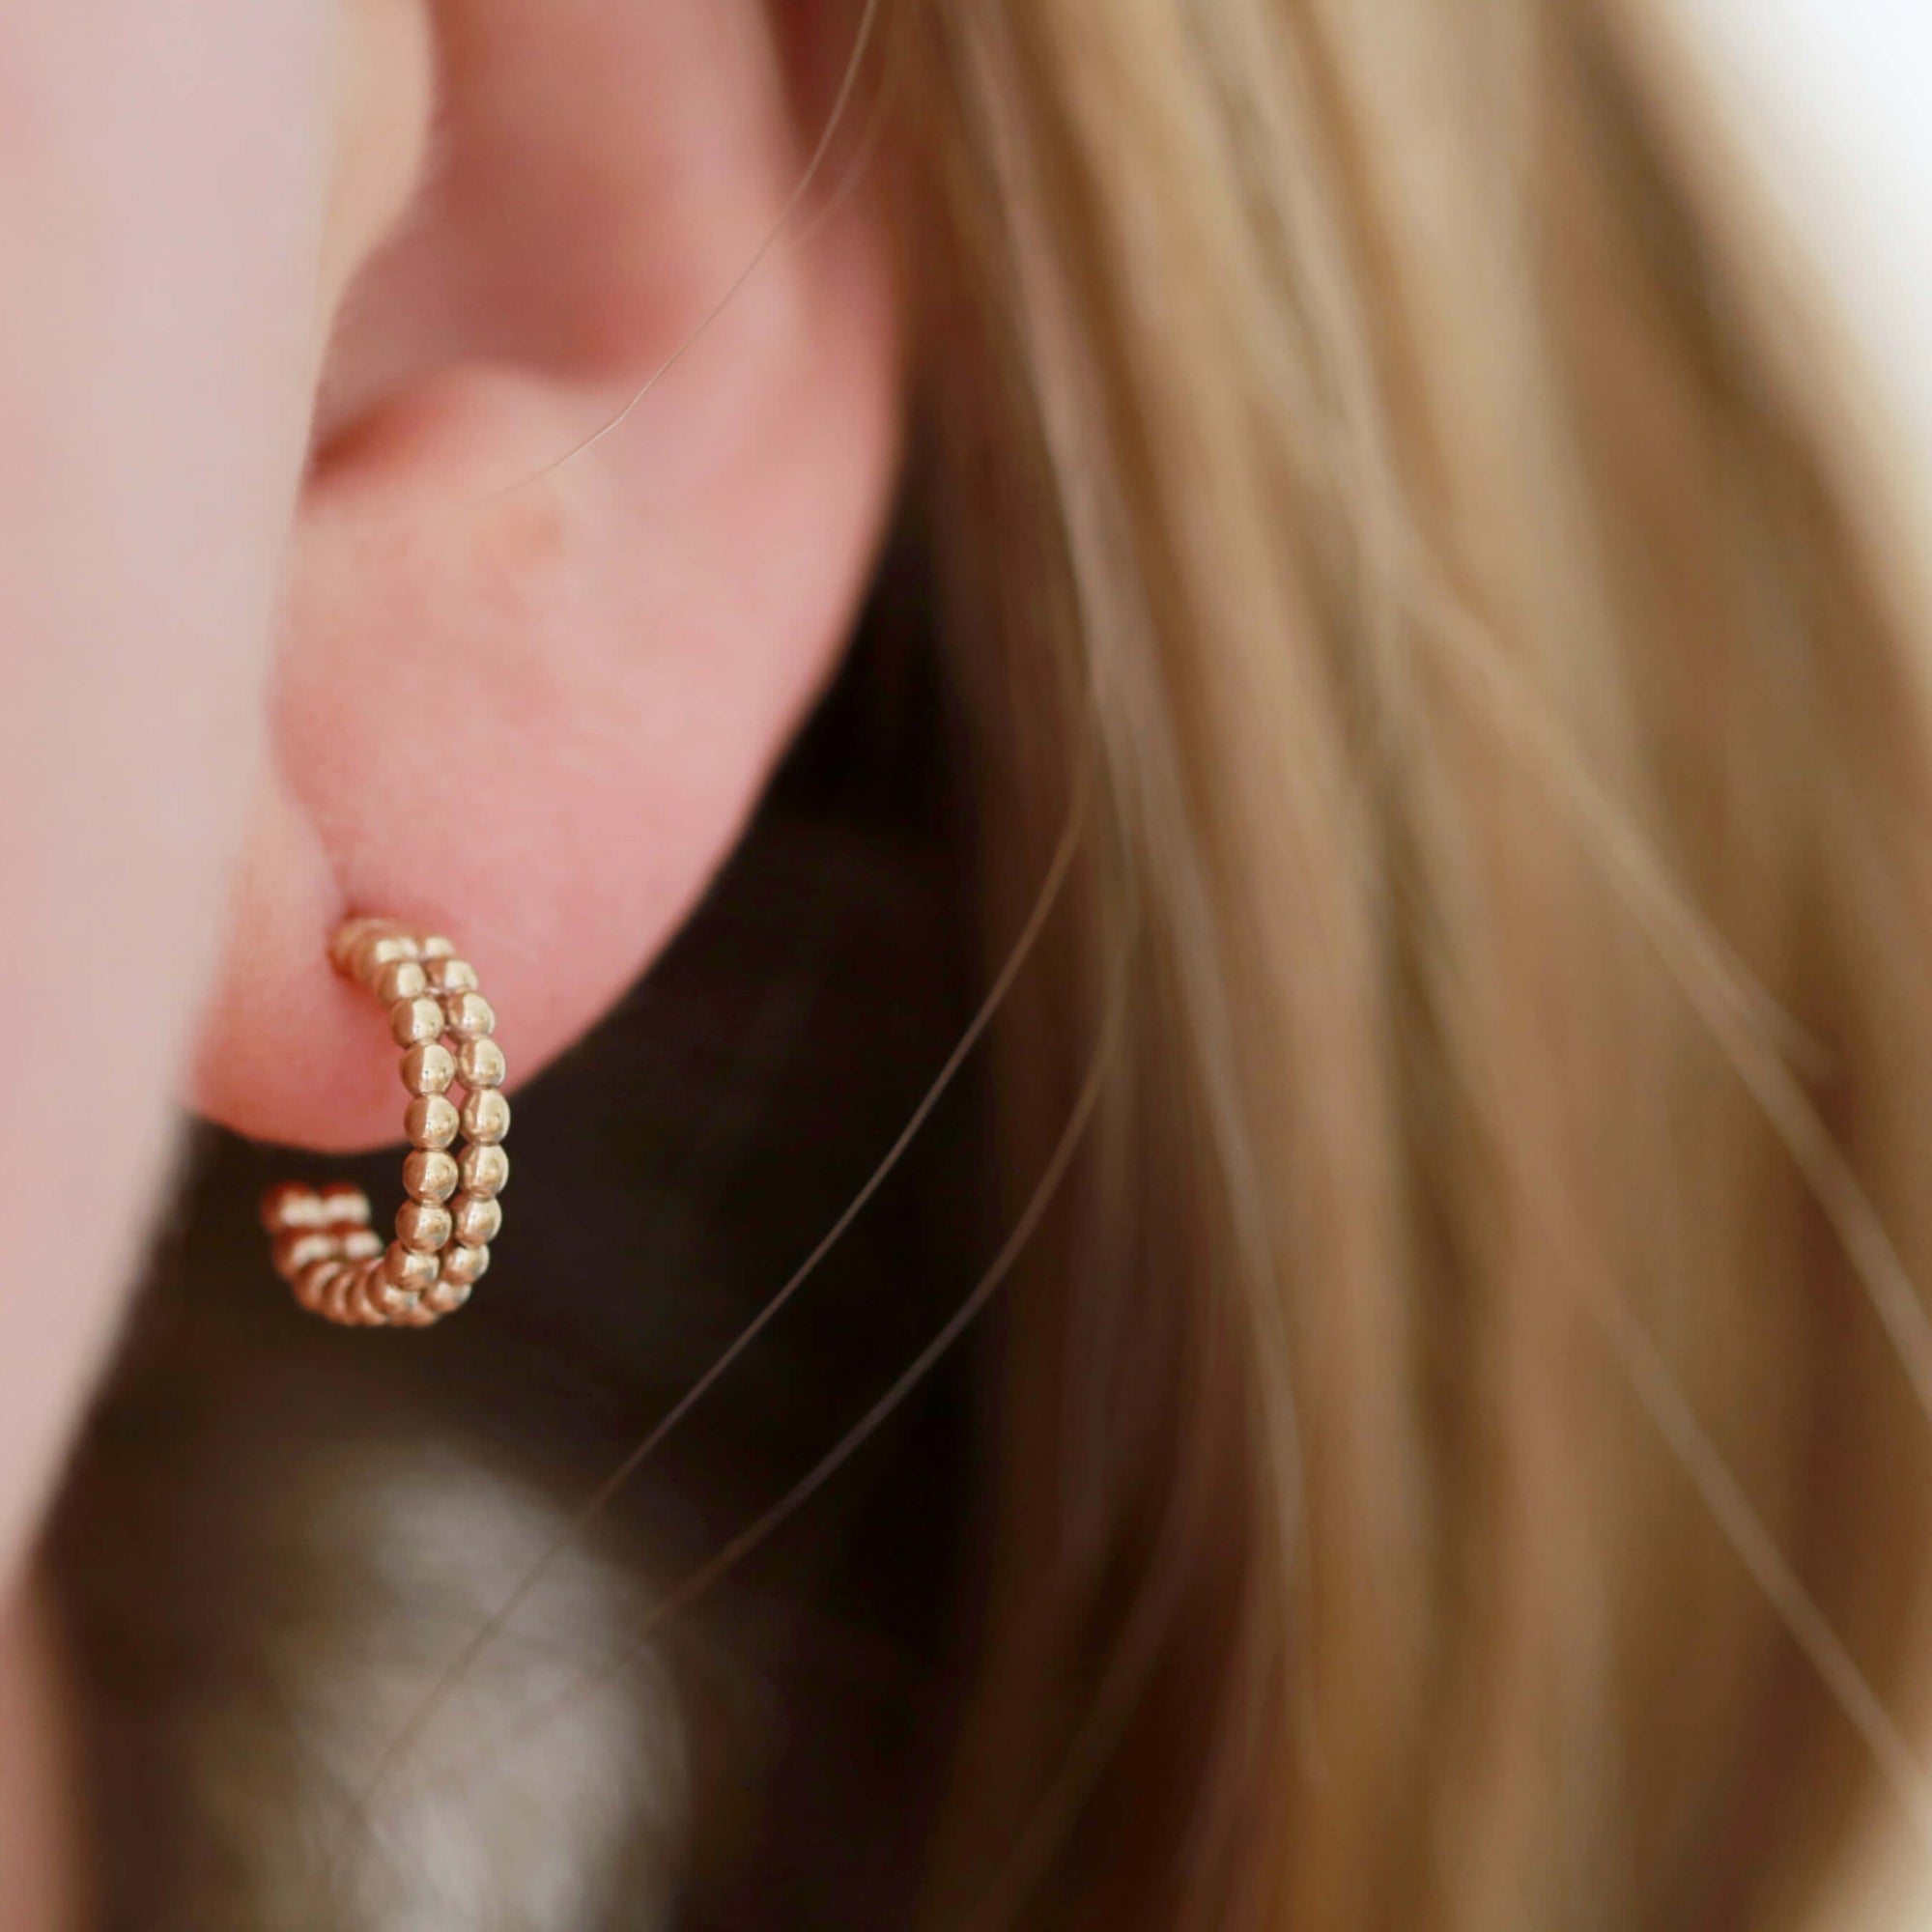 9ct gold huggie earrings uk